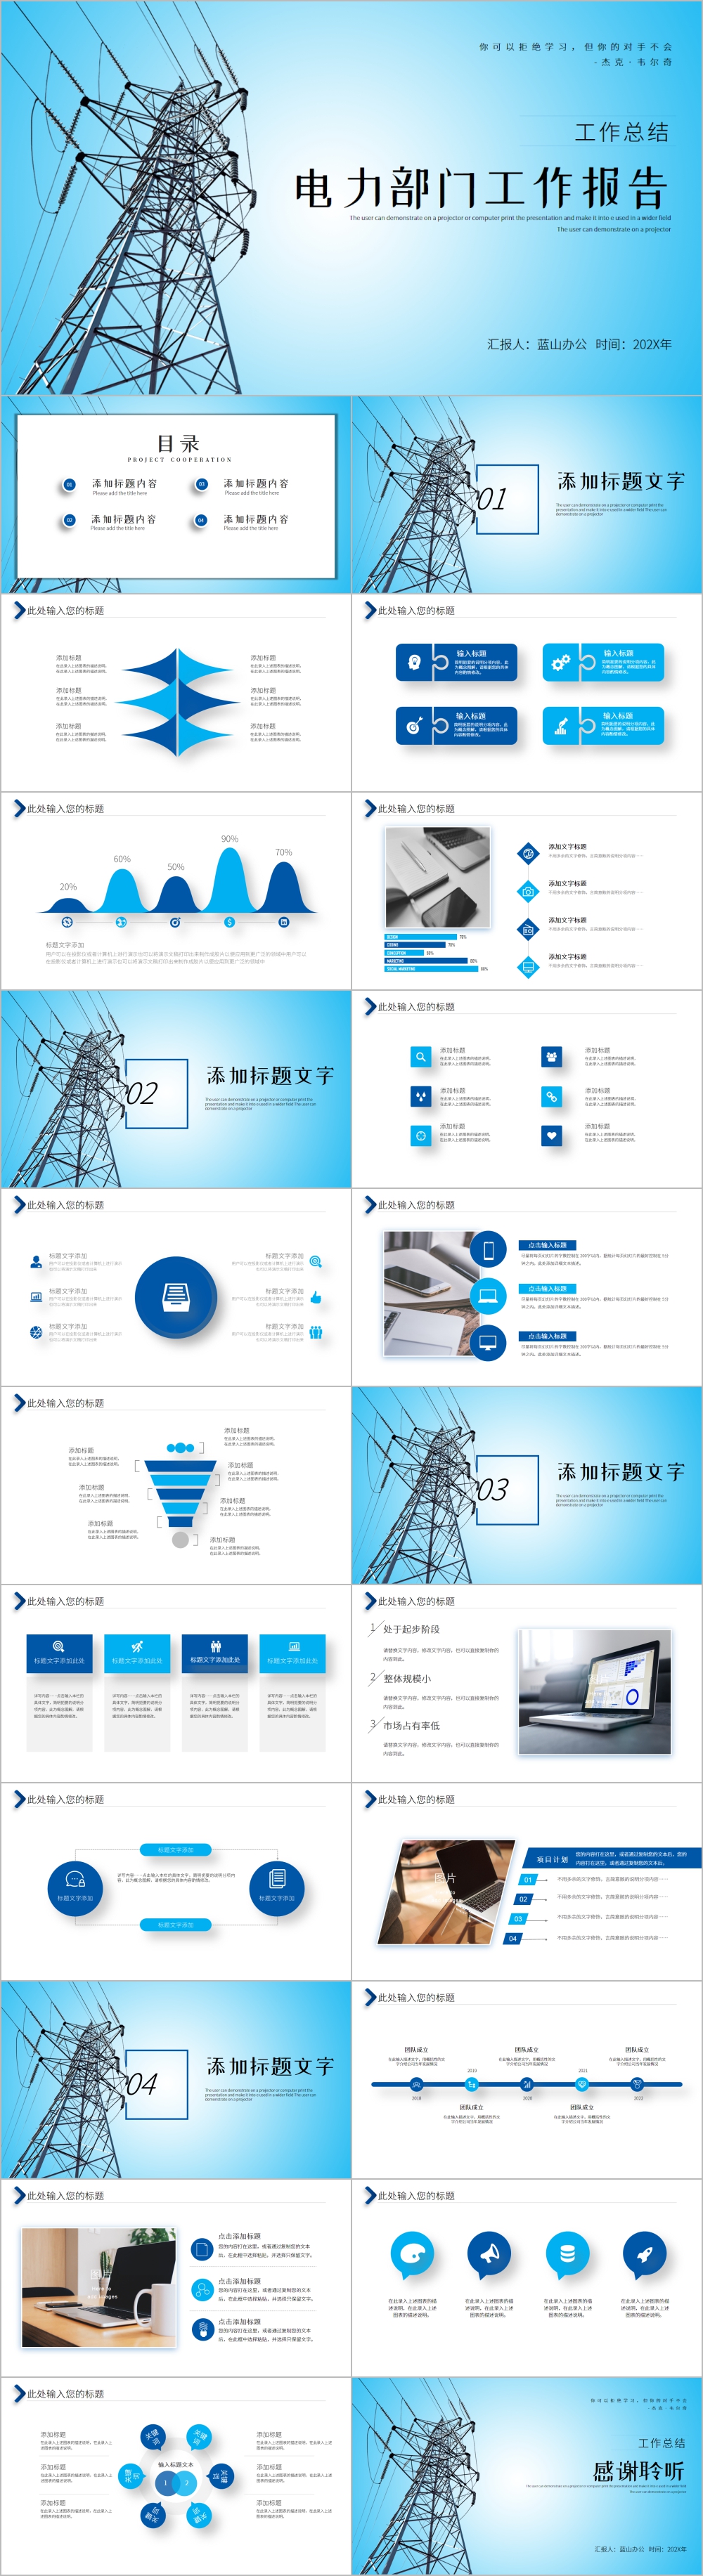 中国南方电网工作通用PPT模板